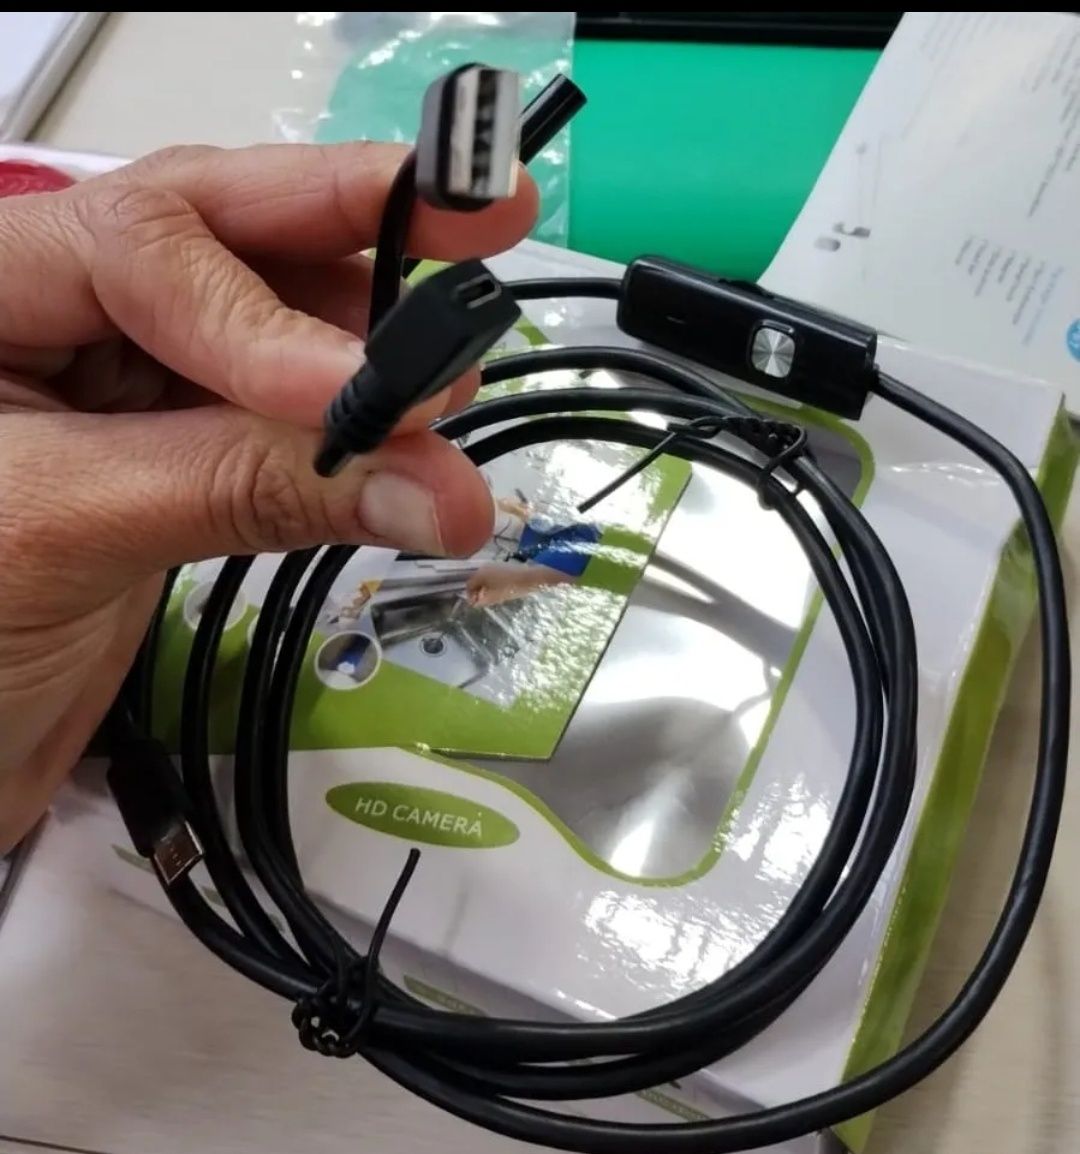 Эндоскоп гибкий кабель водонепроницаемый USB 1,5 , 7мм, 6 LED